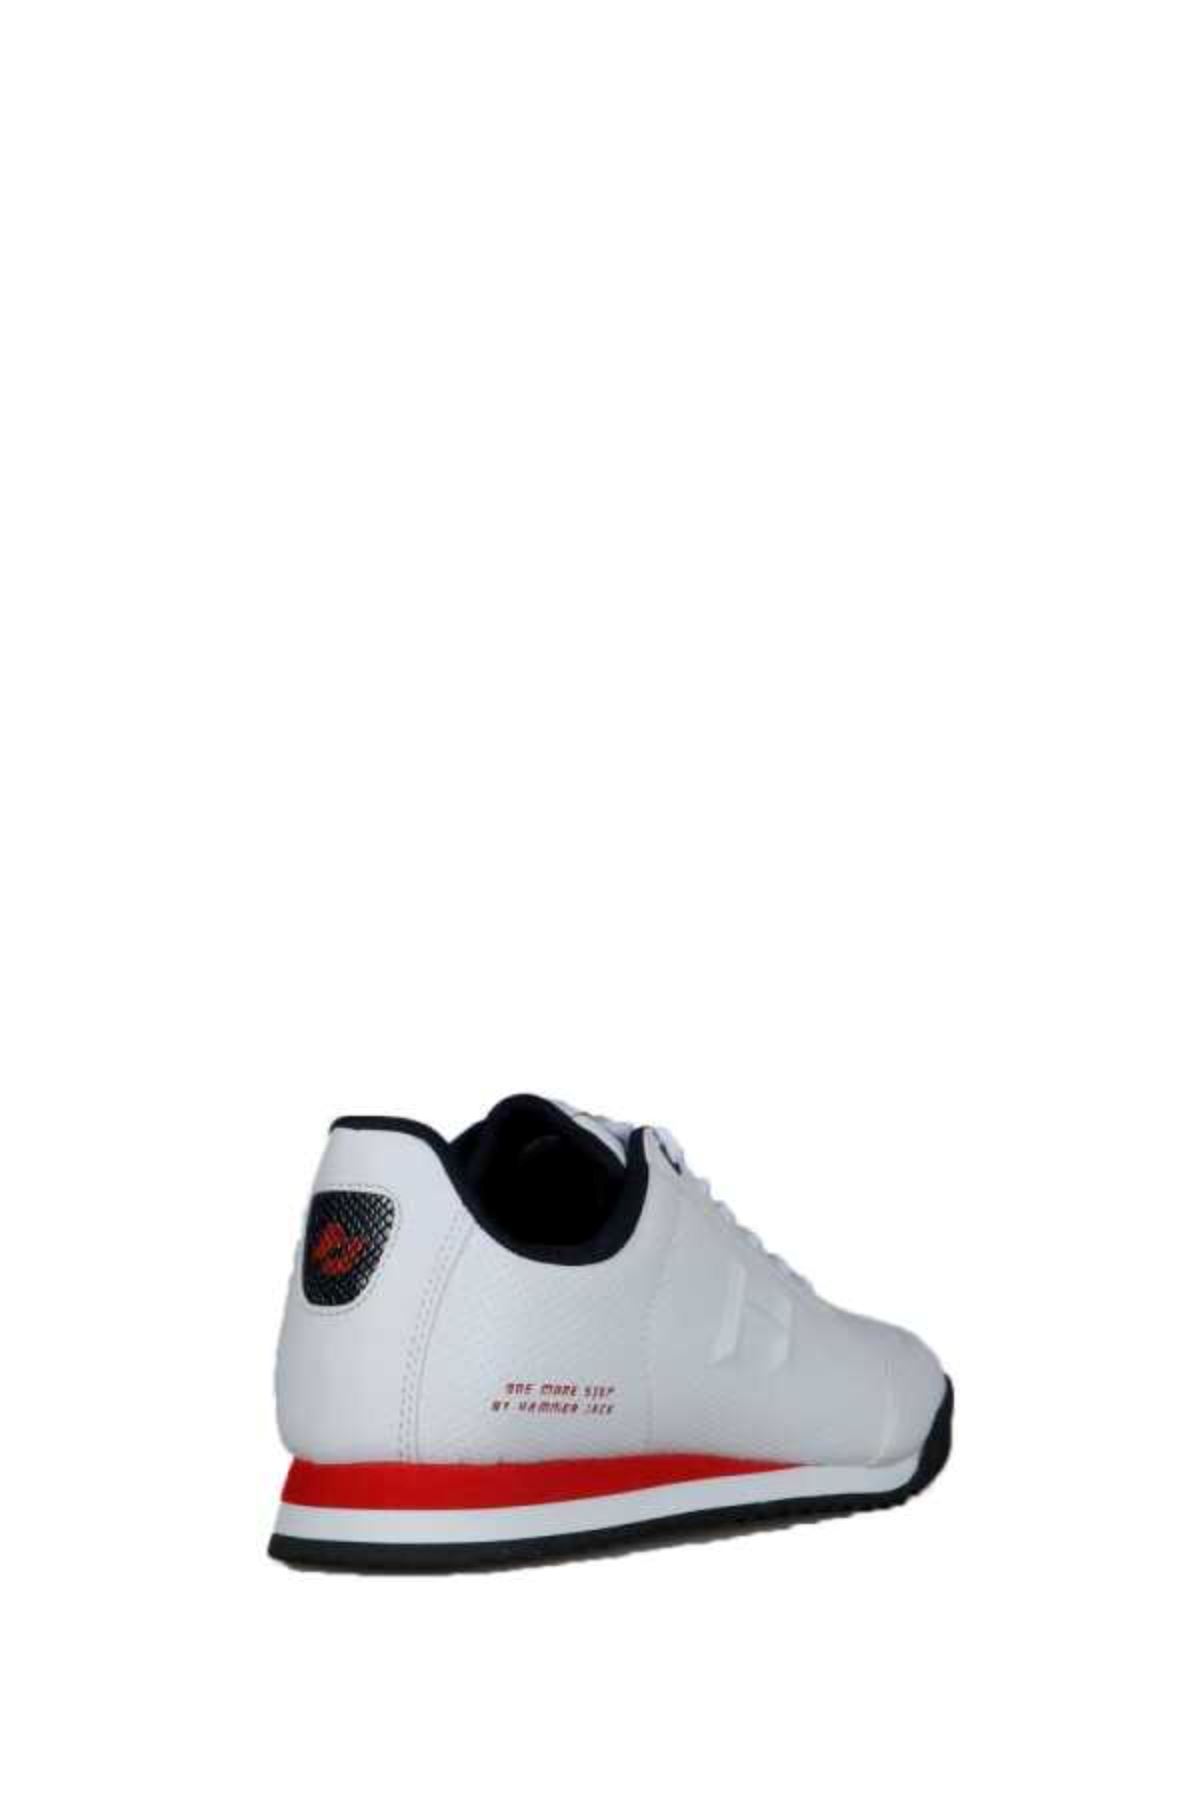 PİCO NEW Erkek Beyaz Spor Ayakkabı - 21540-M